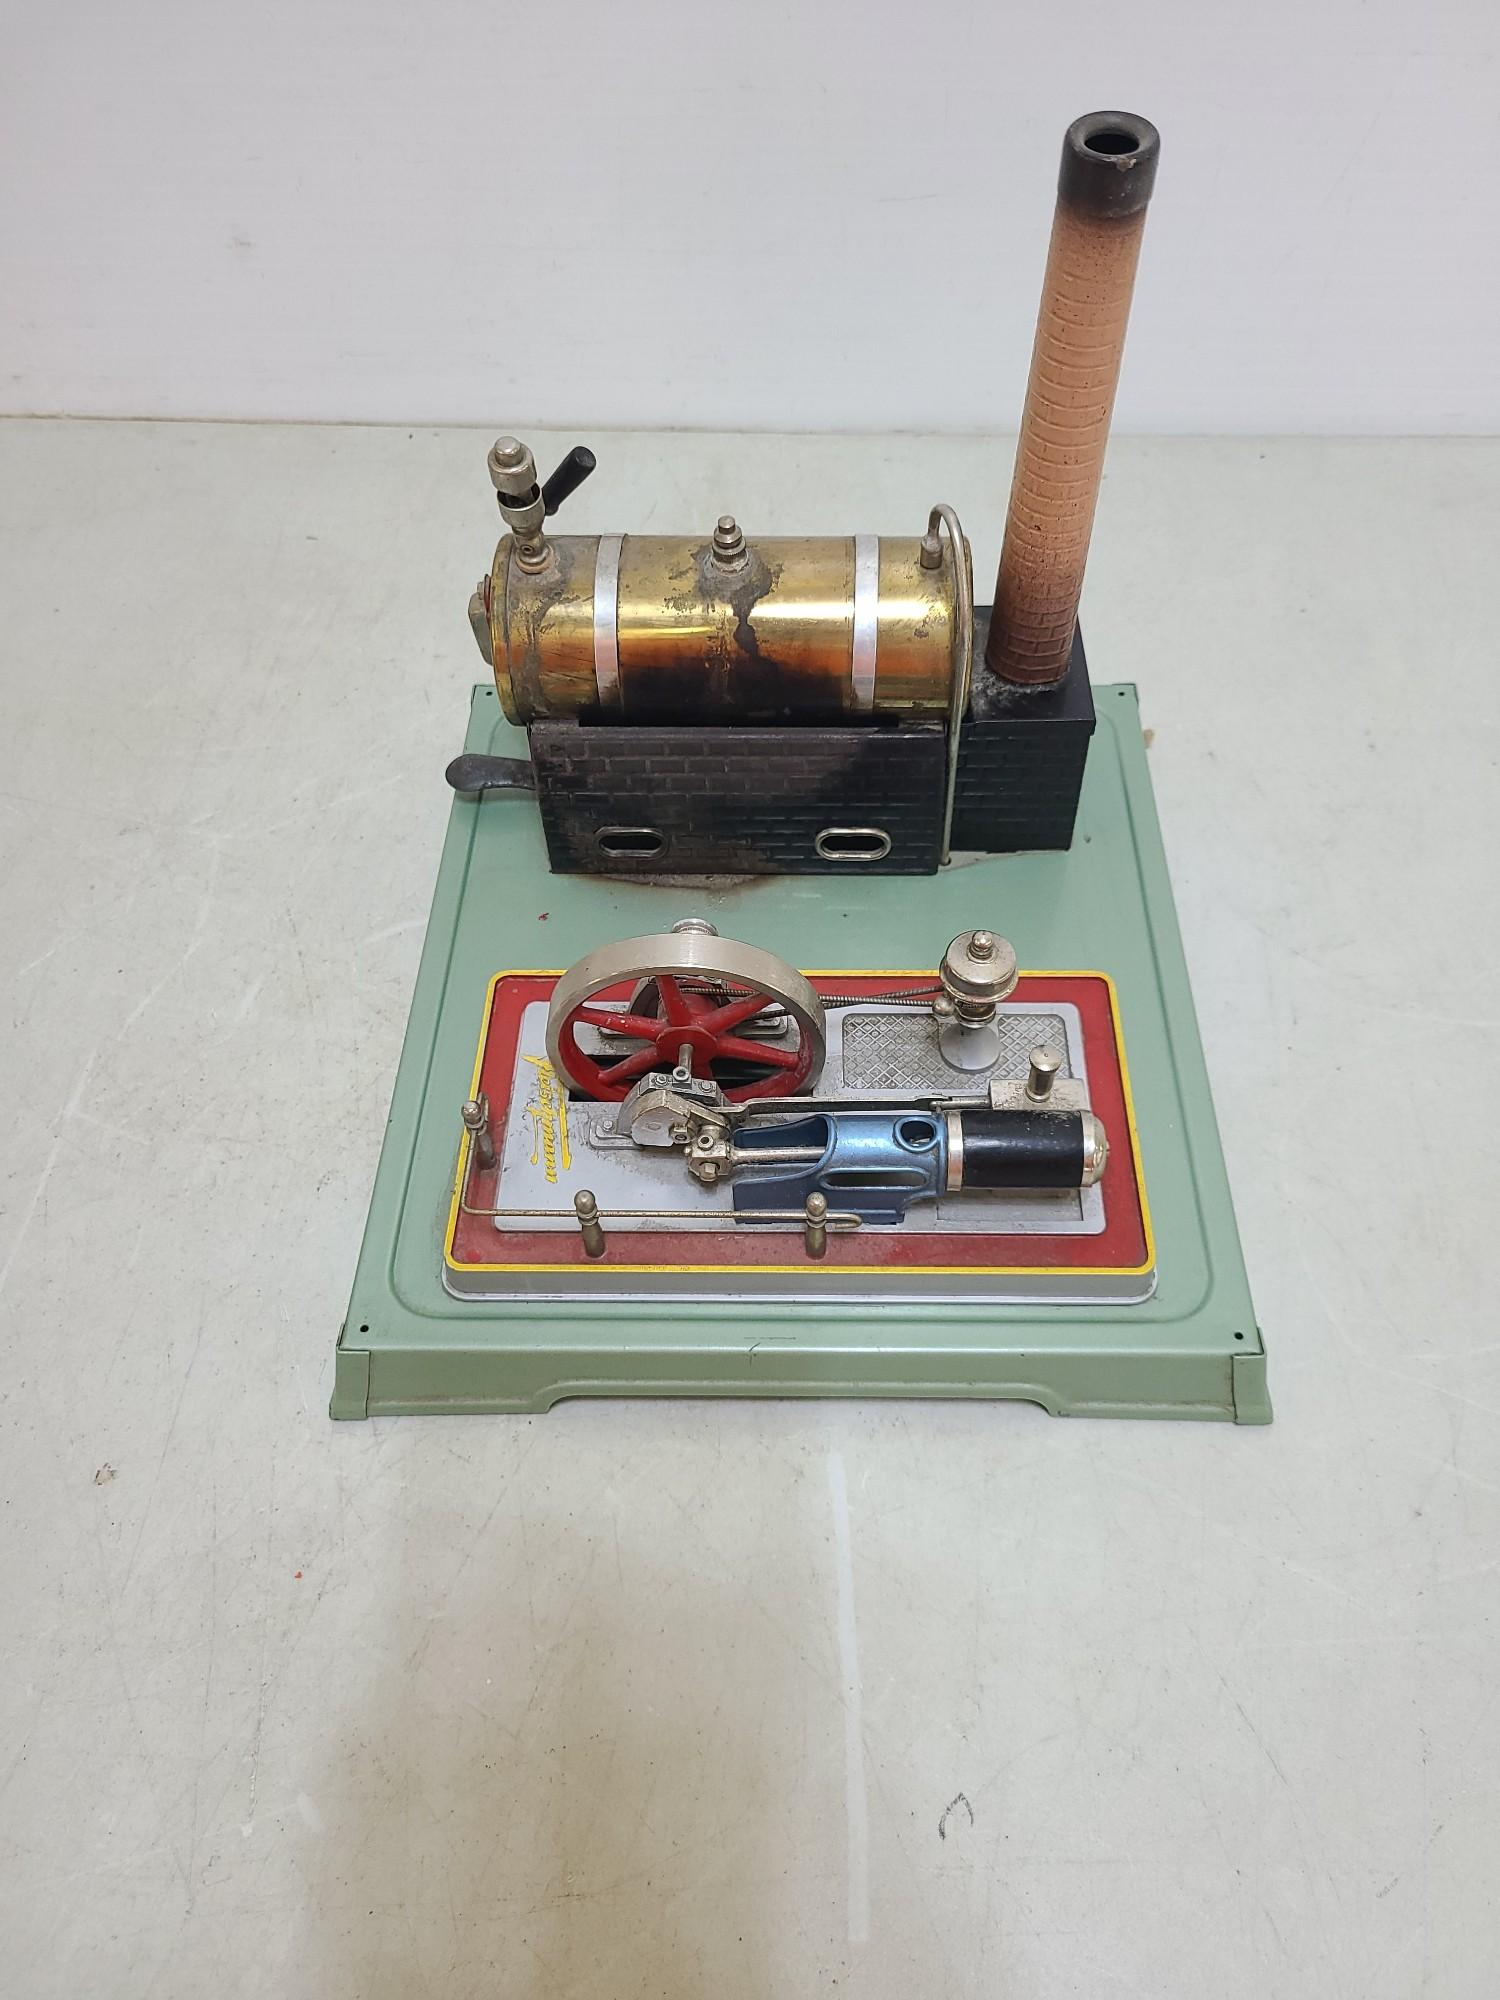 Fleischmann Steam Engine With Shop Accessories Toy